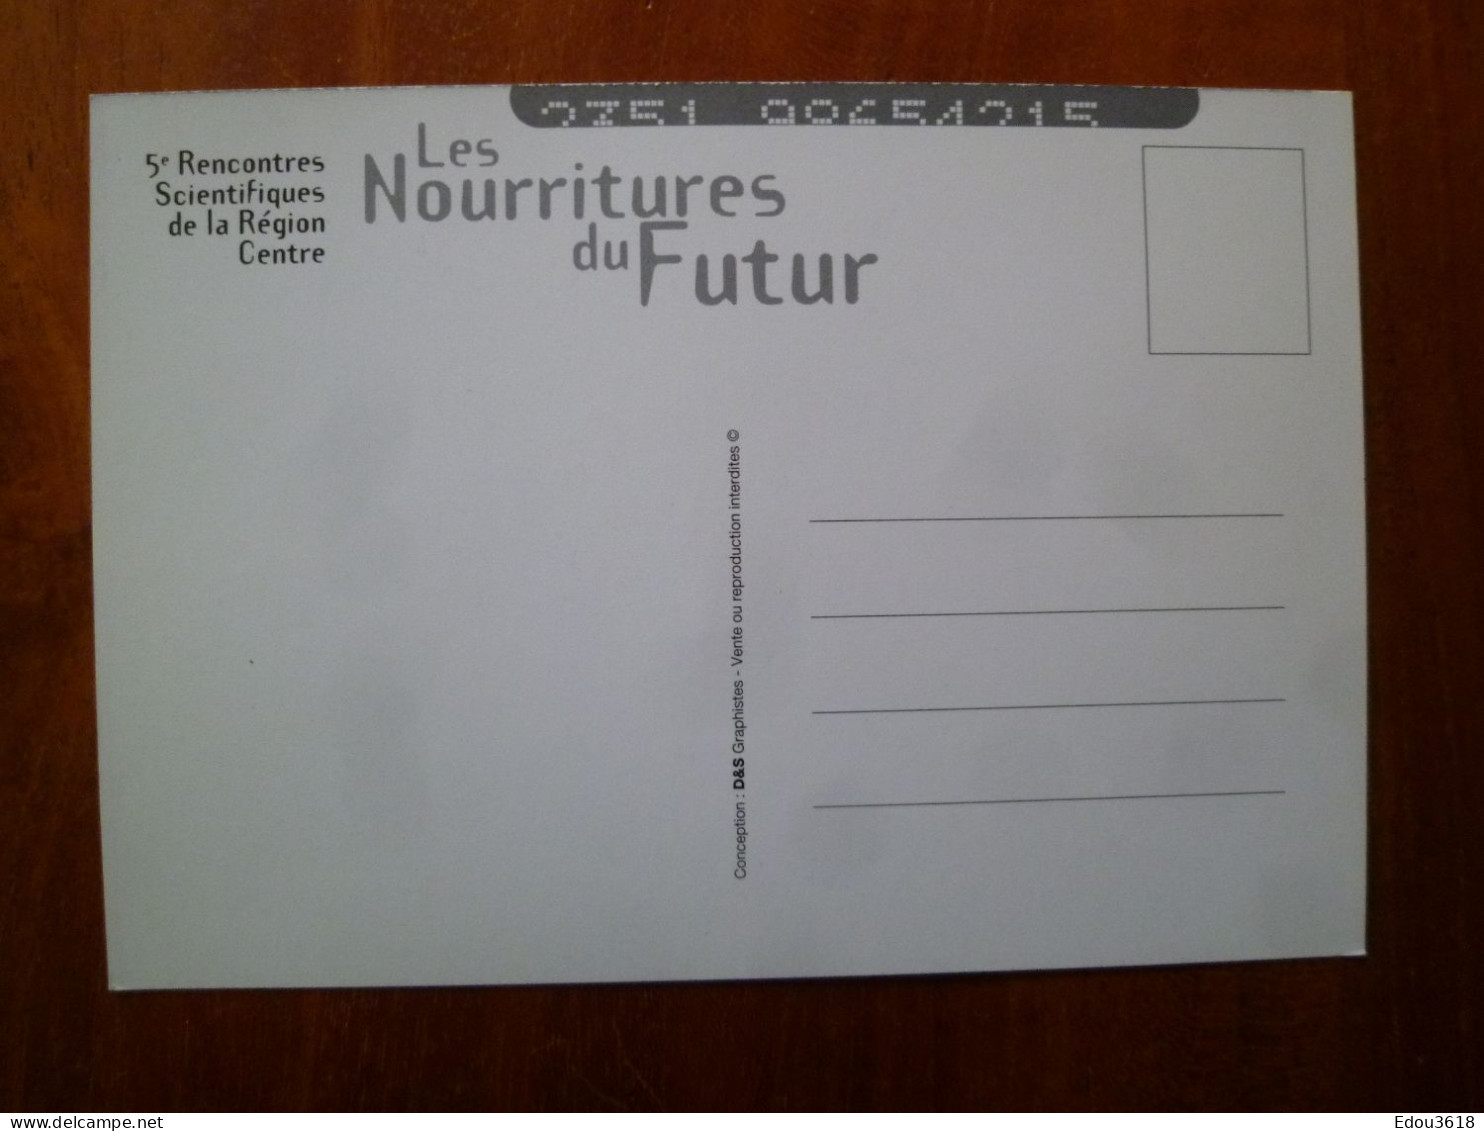 Carte Postale Rencontres Scientifiques Région Centre Orléans 1998 Nourritures Du Futur S - Demonstrationen